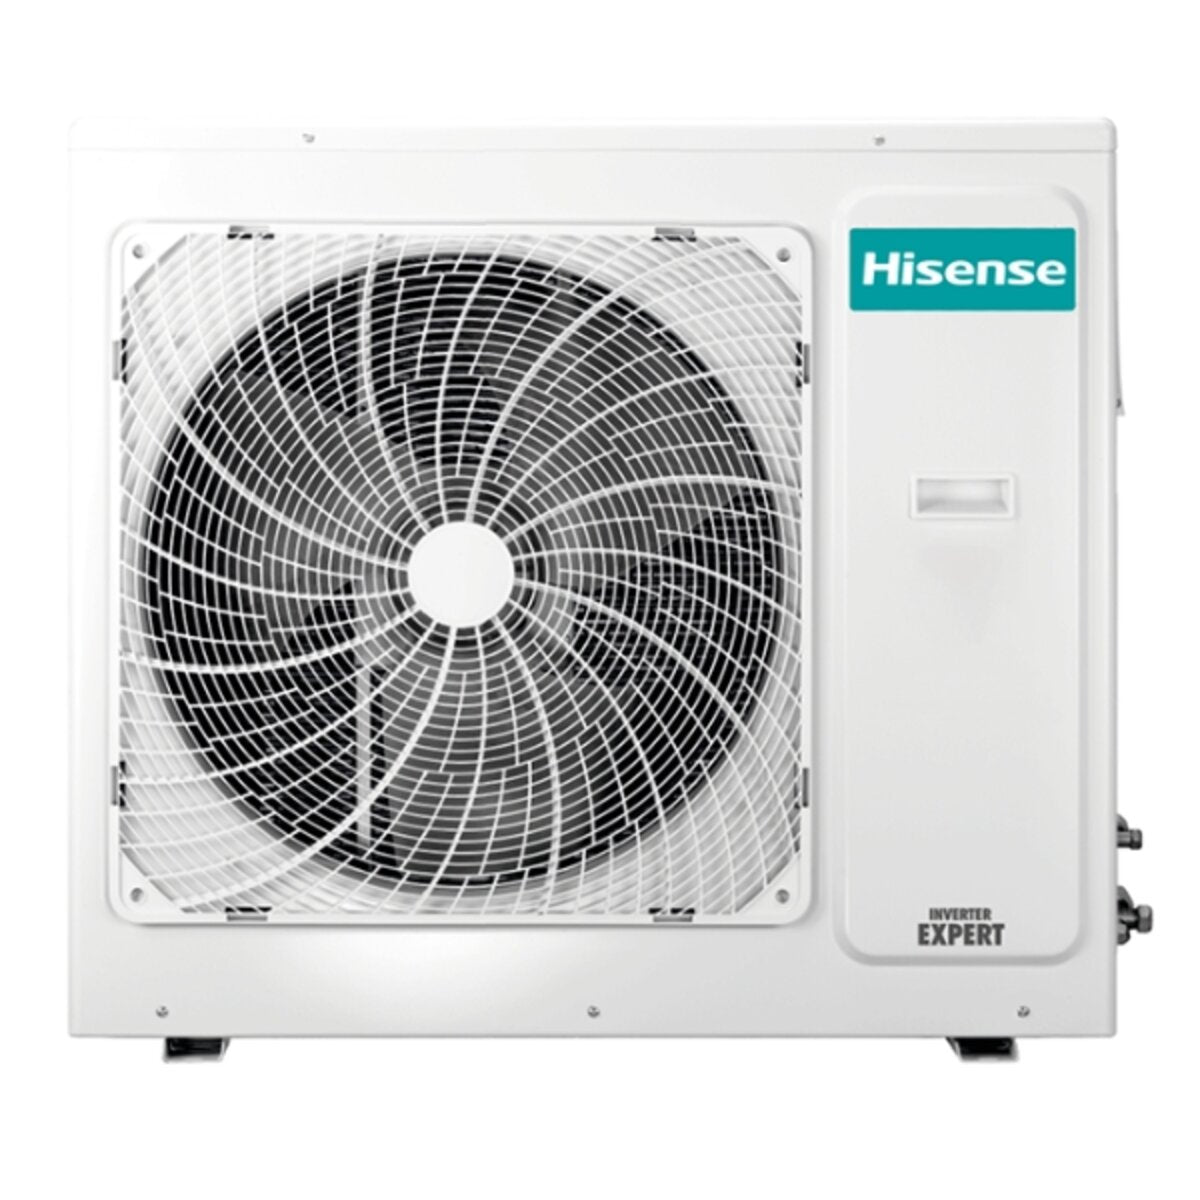 Climatiseur Hisense Hi-Comfort quadri split 7000 + 12000 + 12000 + 12000 BTU inverter A++ wifi unité extérieure 10.0 kW